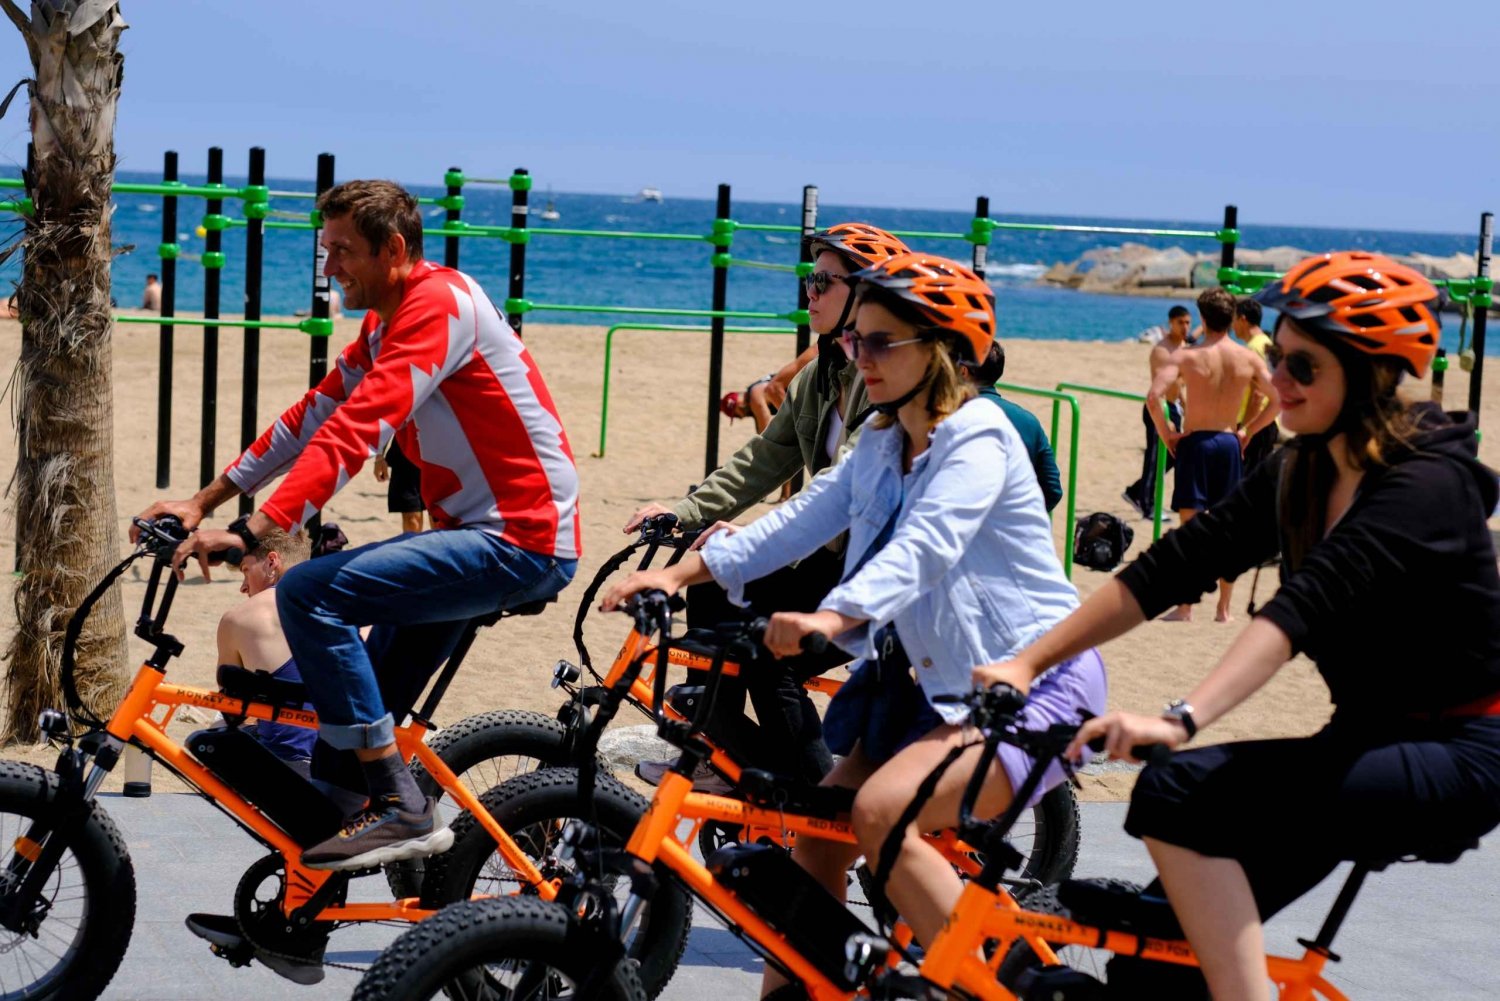 Barcelona: Guidet byrundtur på cykel eller elcykel